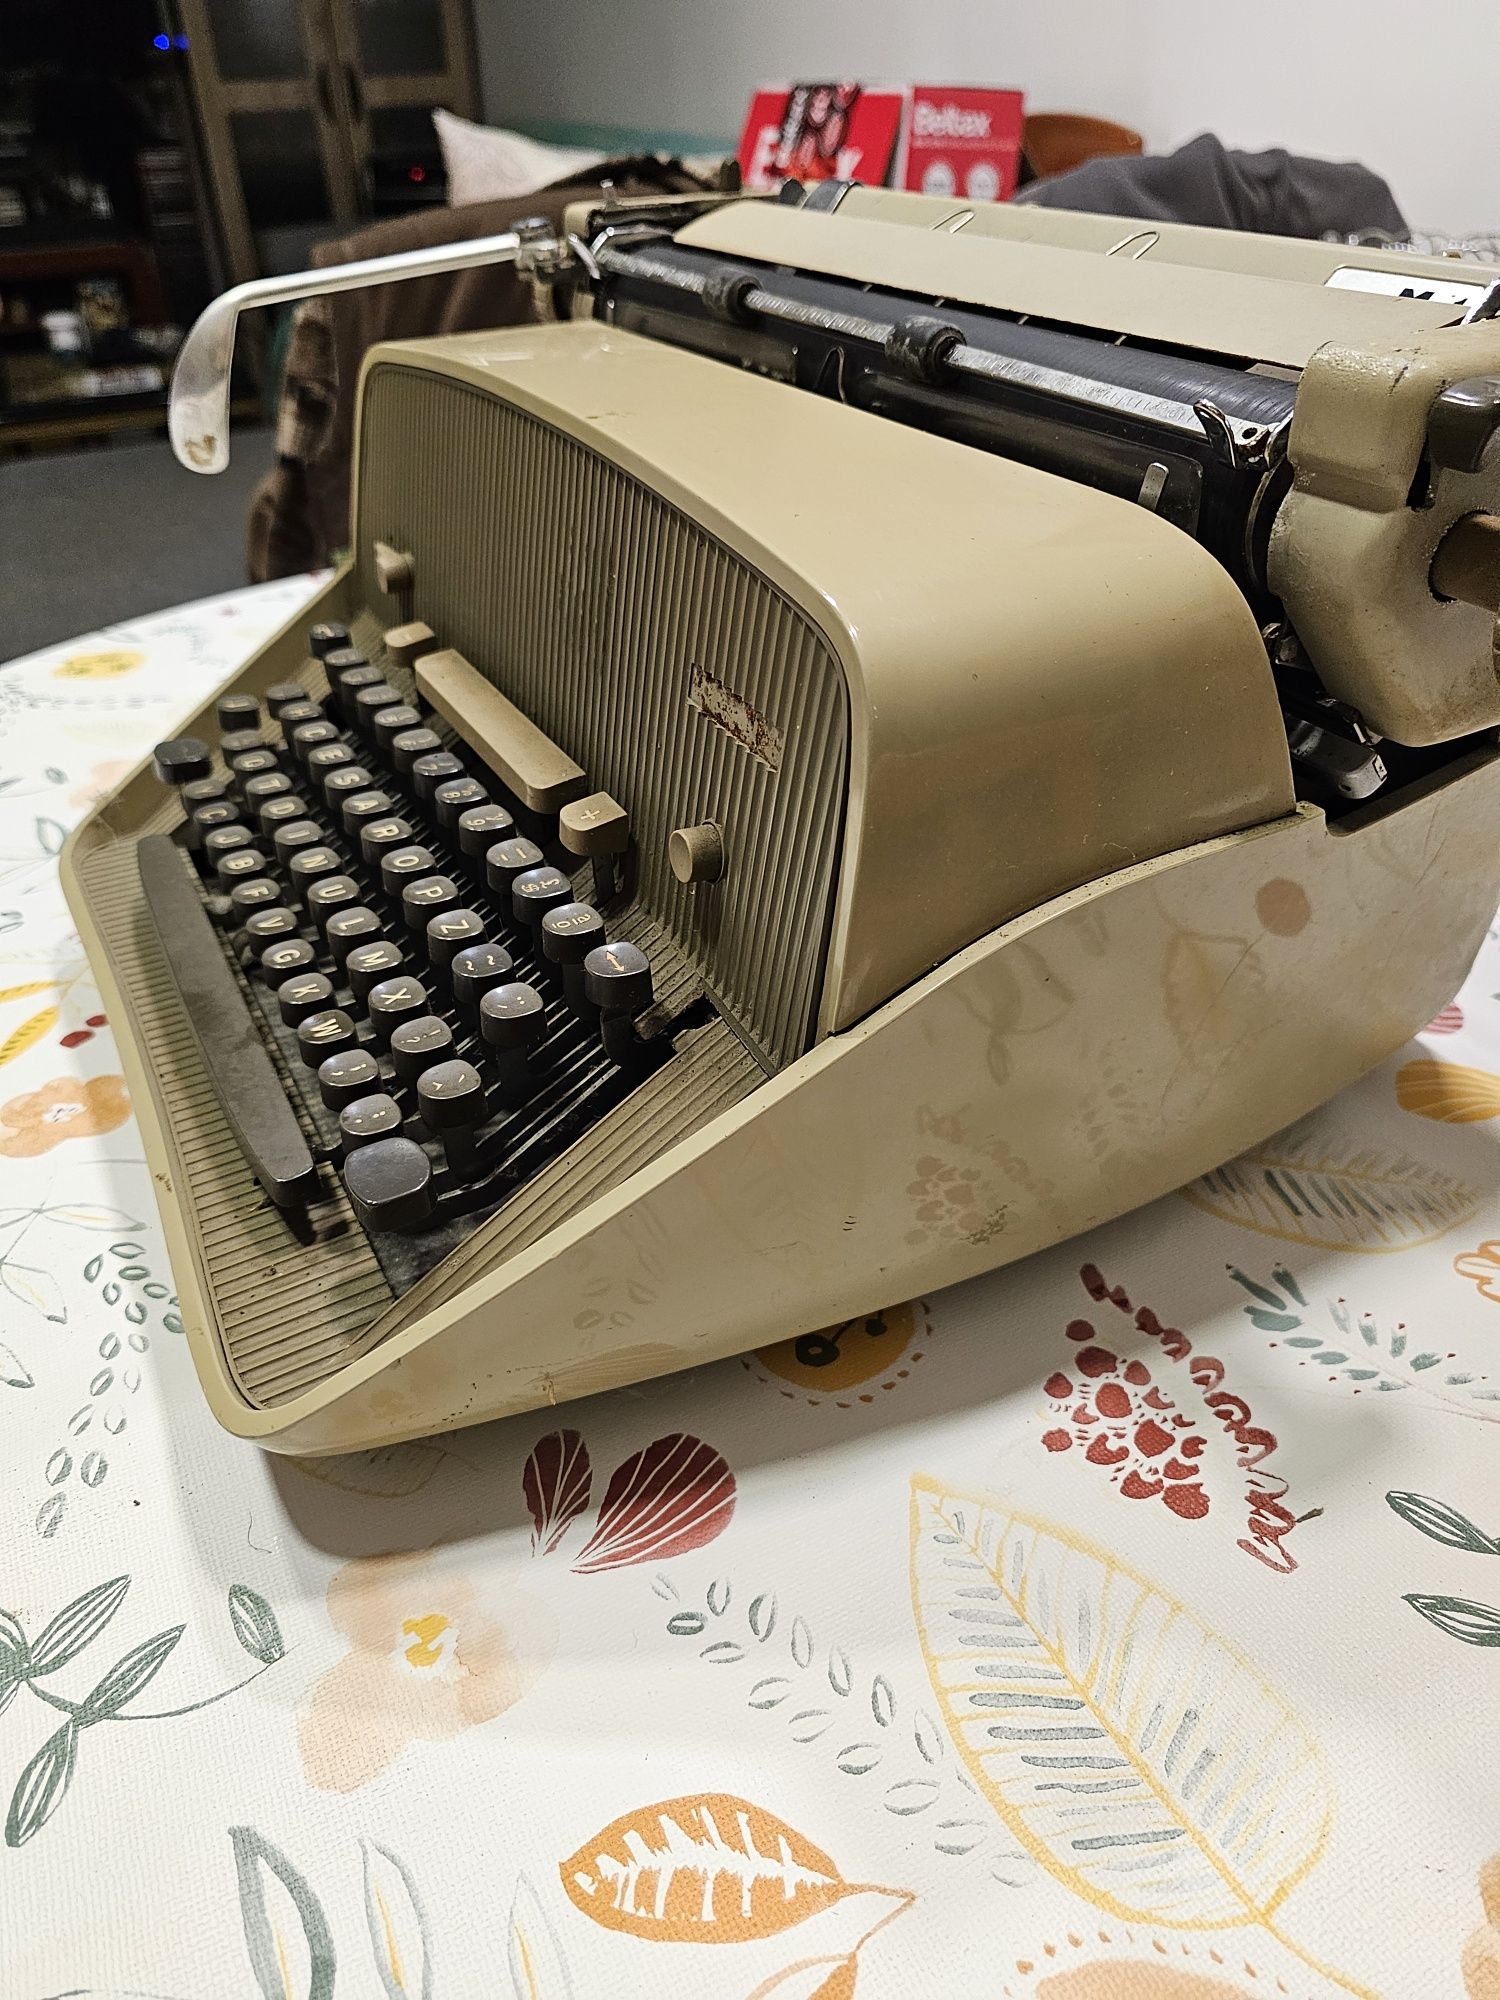 Máquina de escrever MESSA